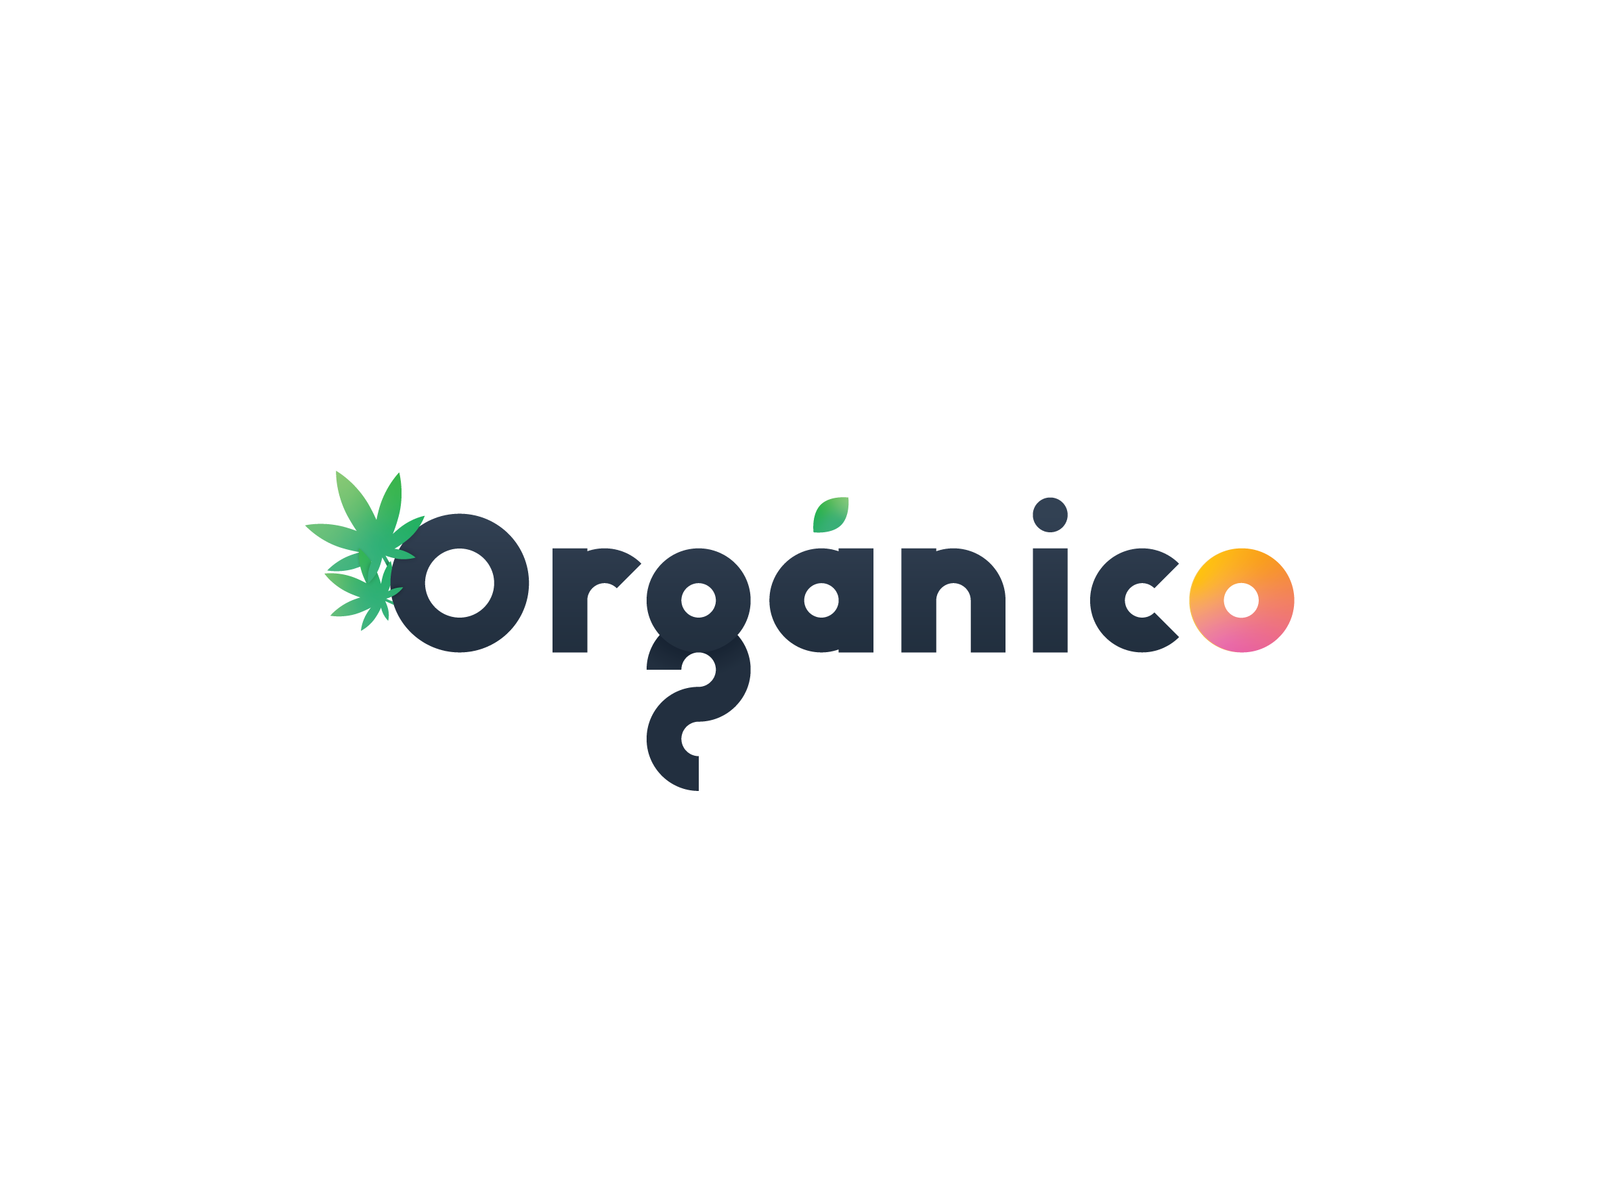 Organico by Razvan Postolache on Dribbble